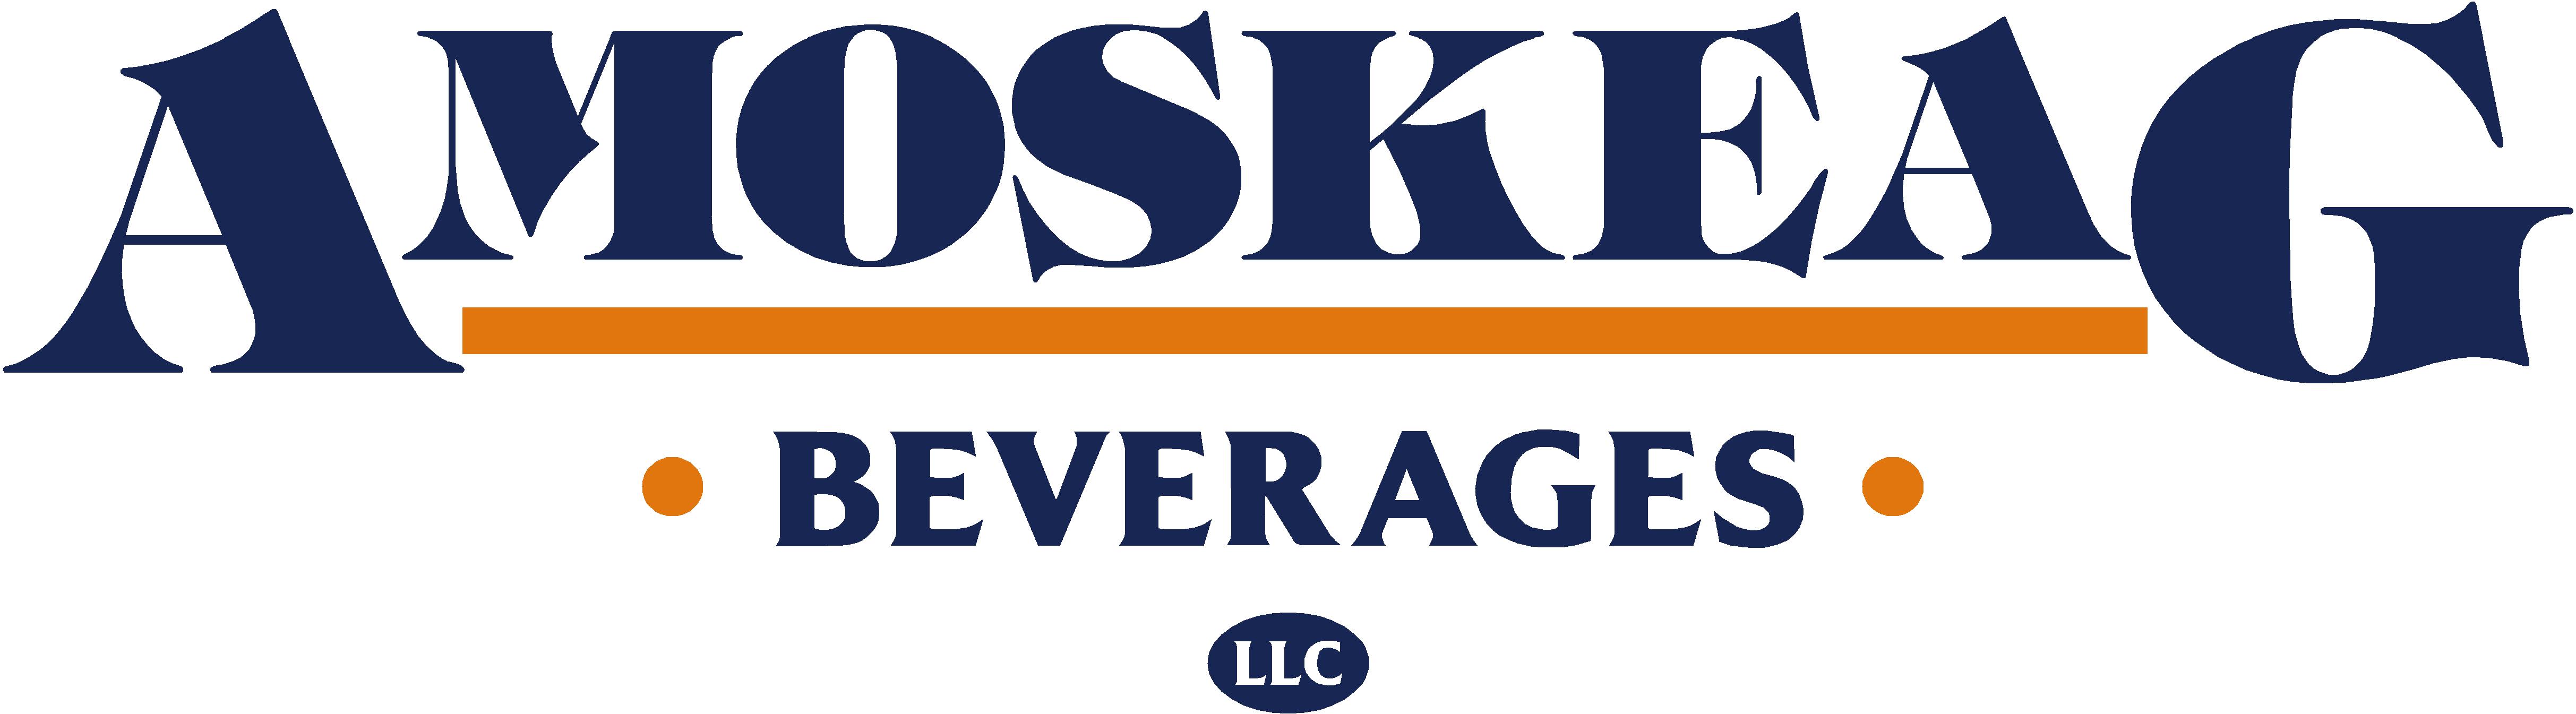 Amoskeag-Beverages-LLC-New-Logo